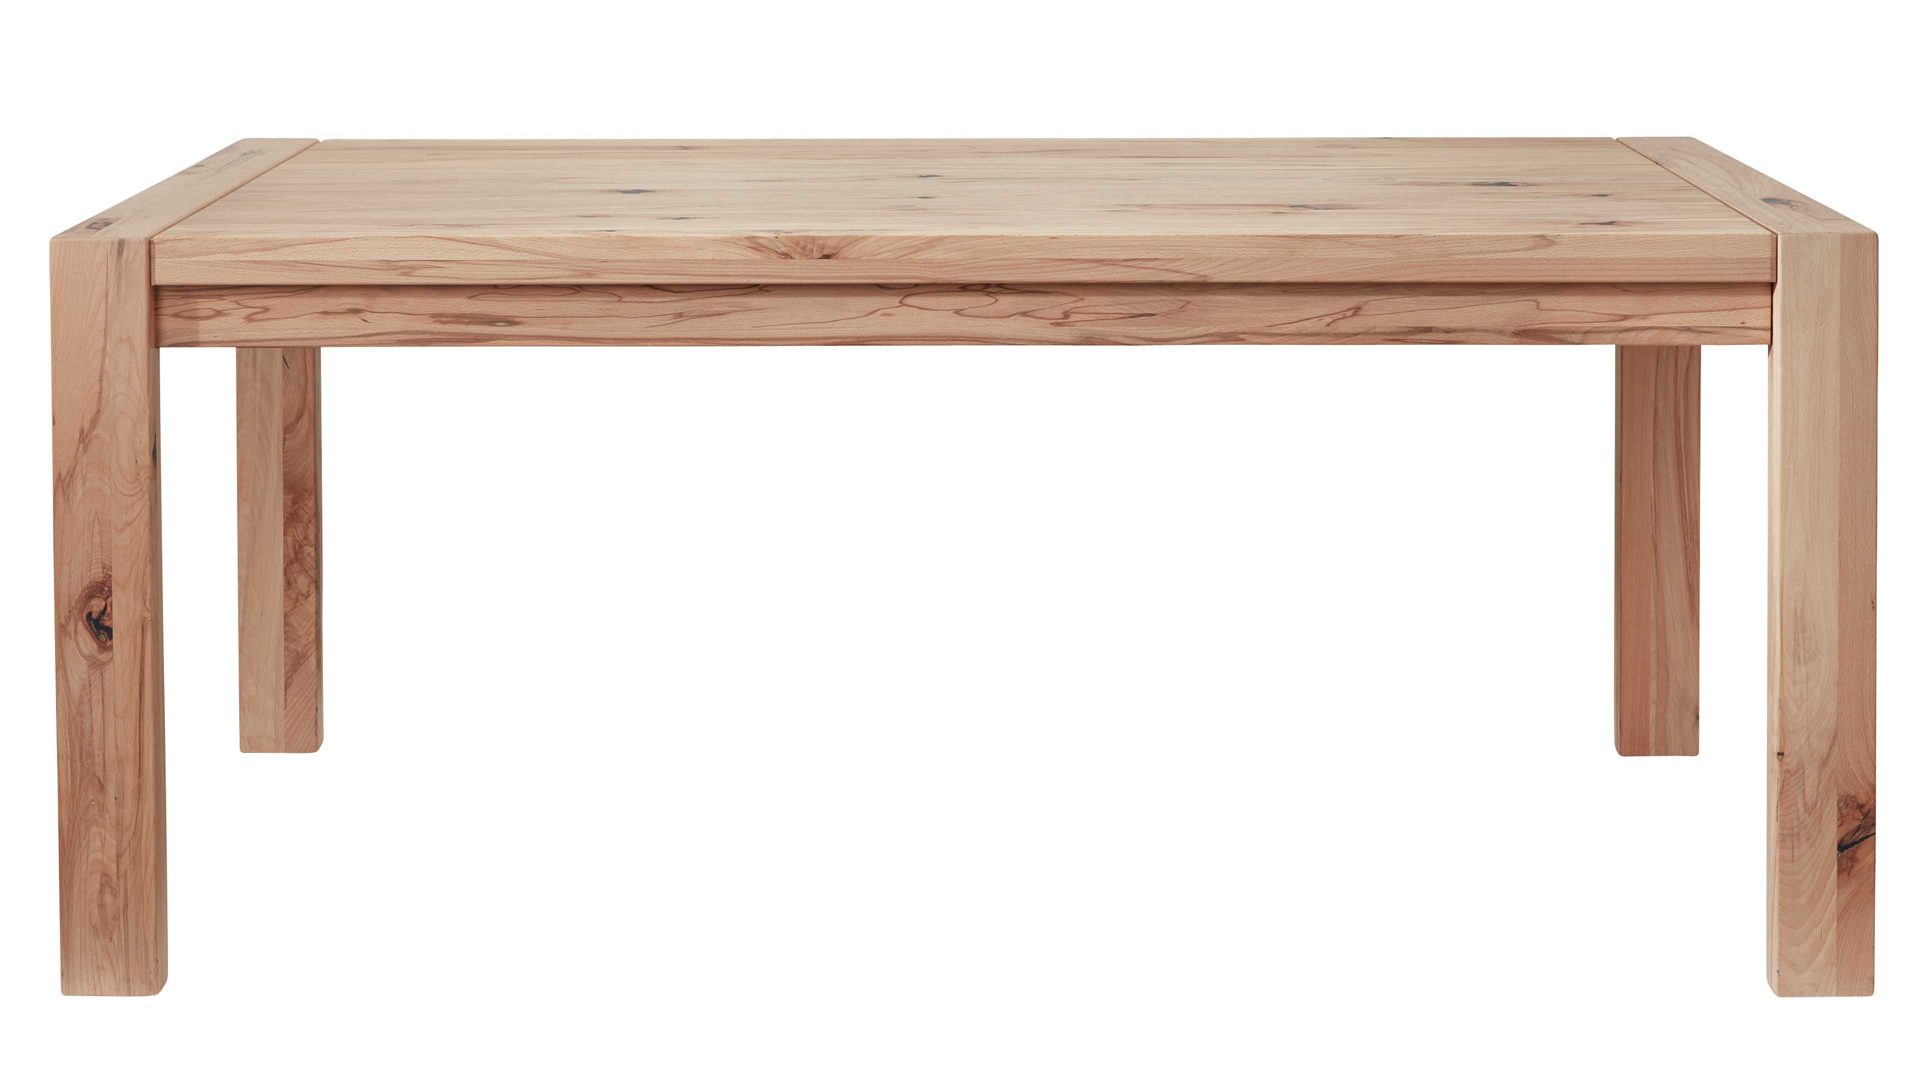 Auszugtisch Interliving aus Holz in Holzfarben Interliving Wohnzimmer Serie 2005 – Auszugtisch 117 582 Asteiche Bianco – ca. 200-300 x 100 cm